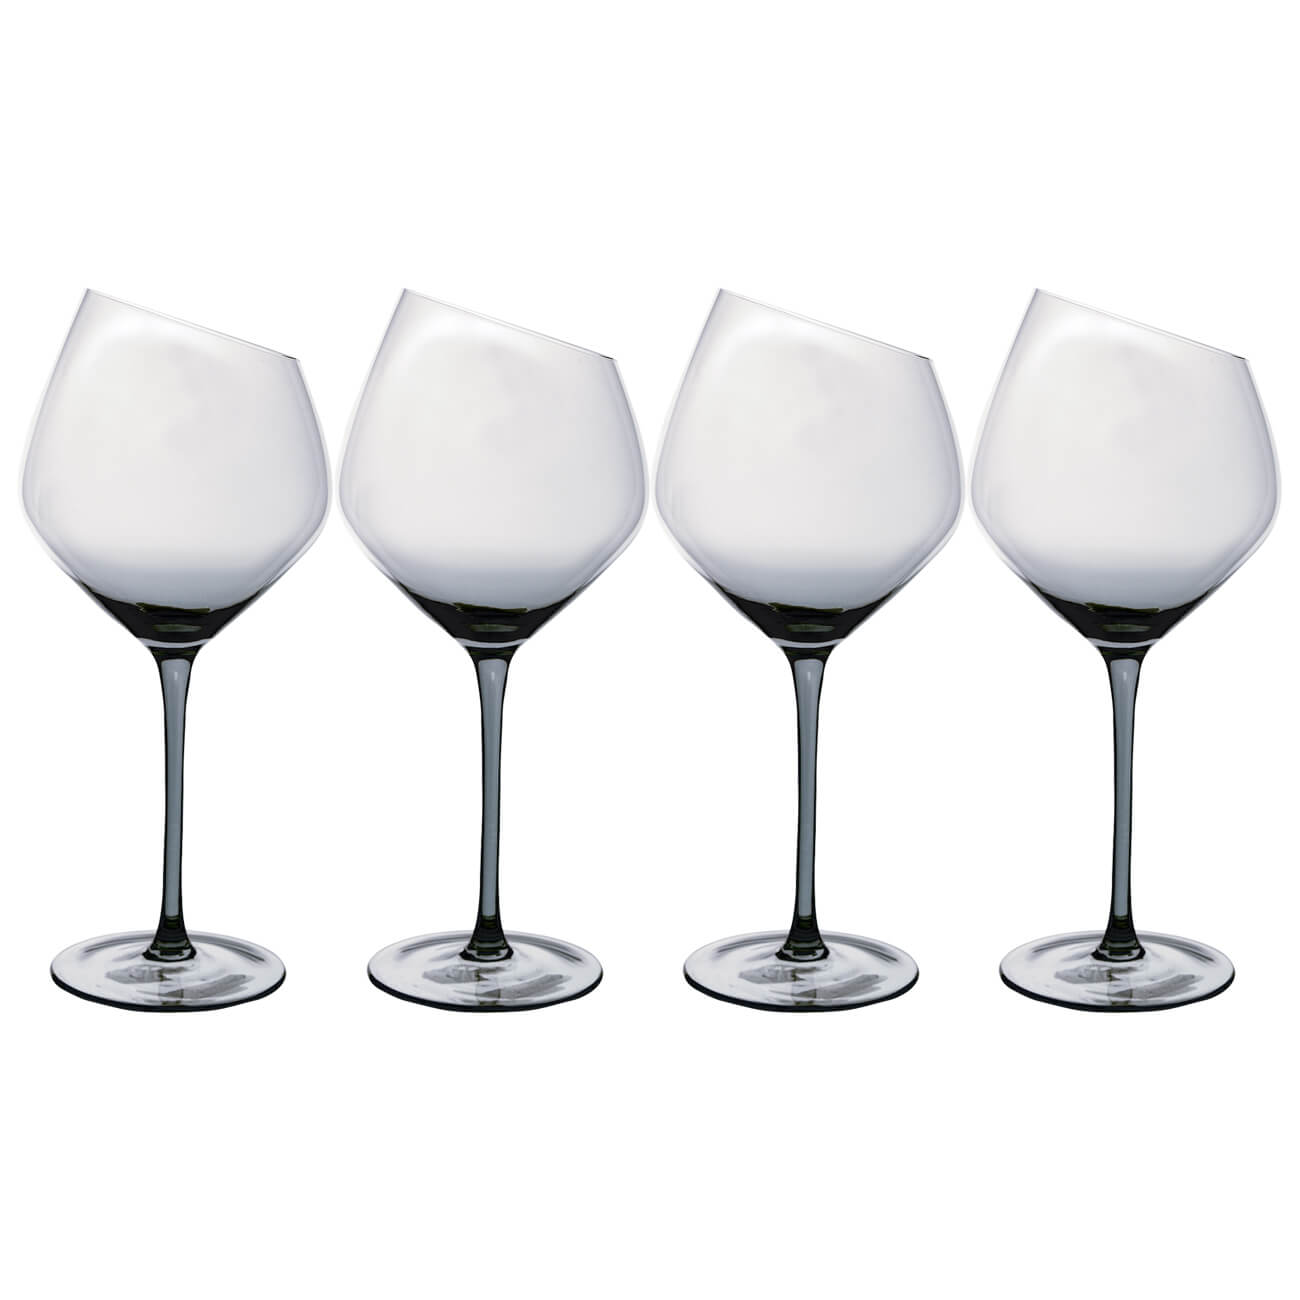 Бокал для красного вина, 560 мл, 4 шт, стекло, серый, Charm L Color бокал для красного вина 560 мл 6 шт charm l